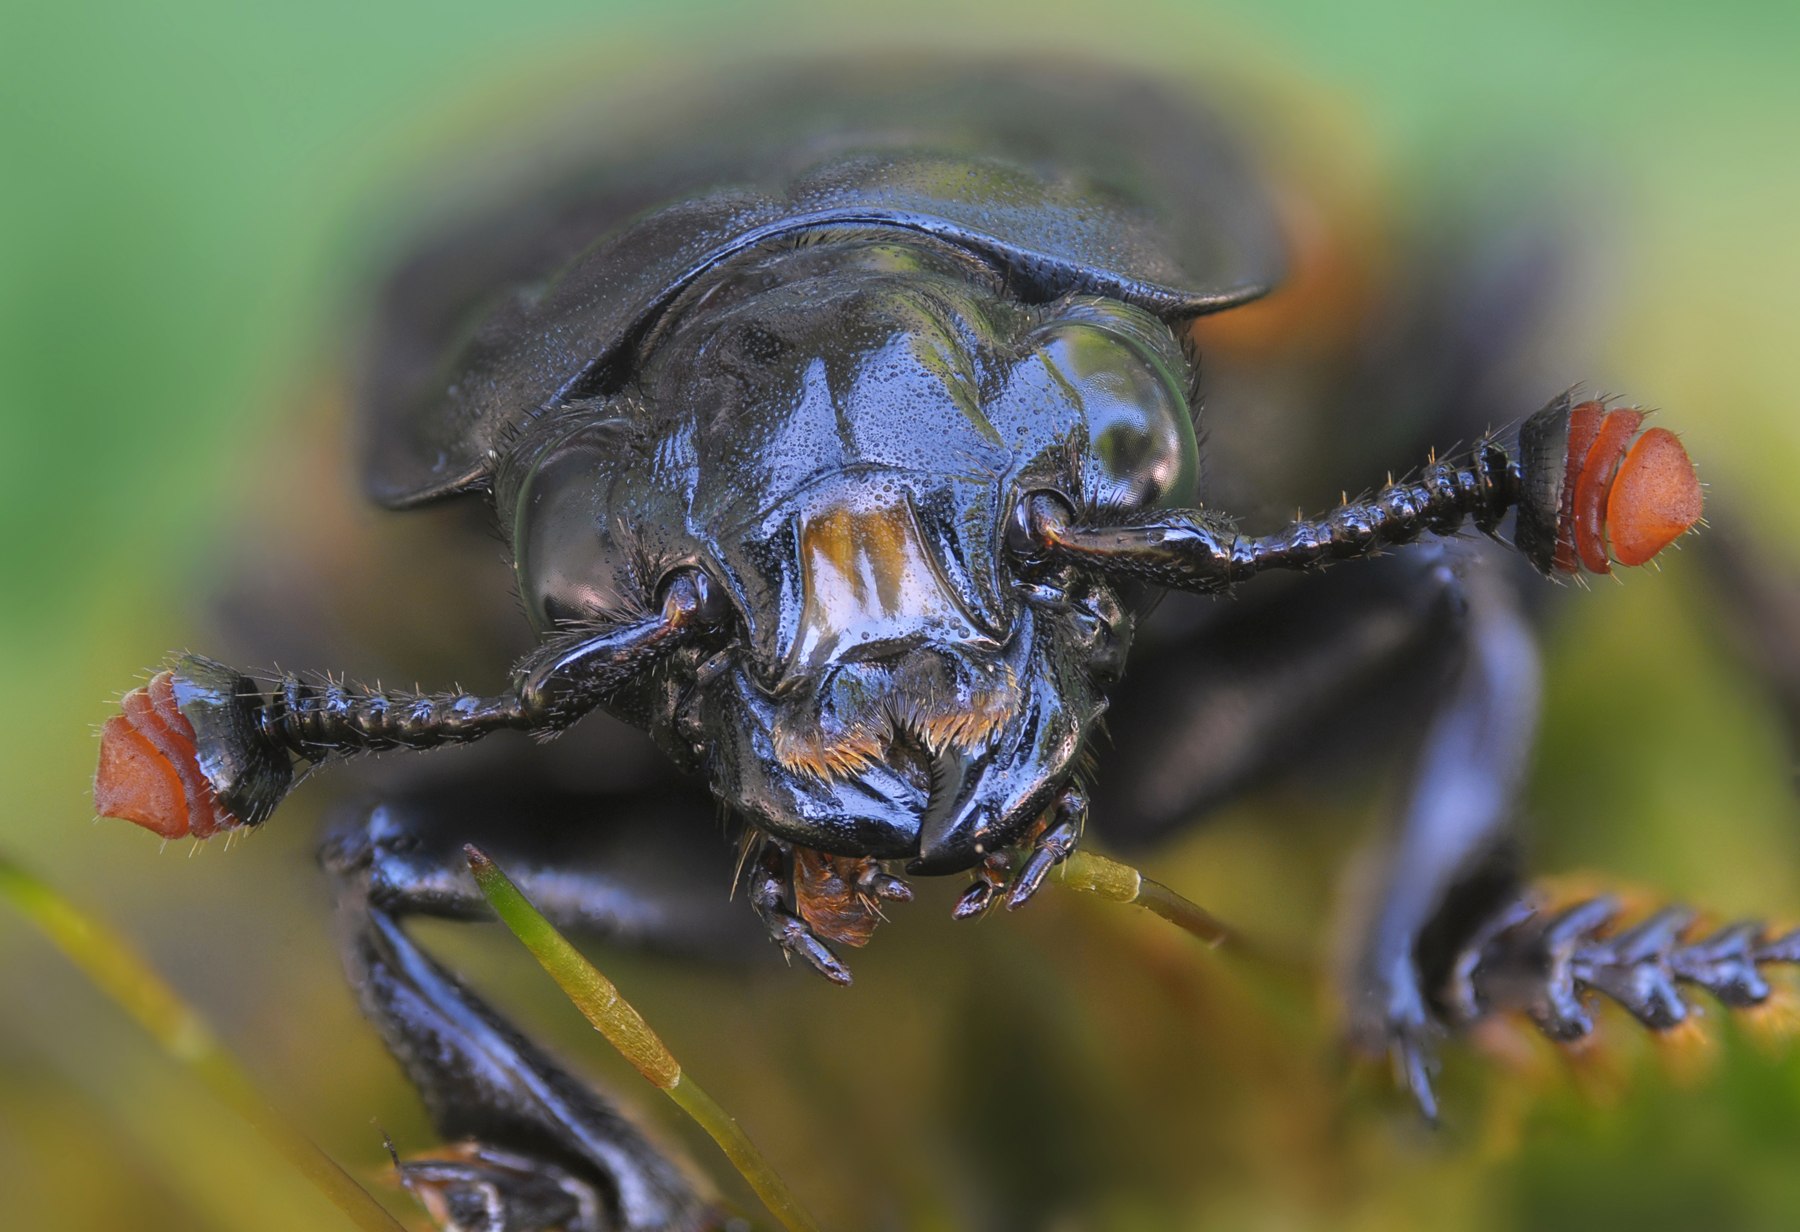 Известно что жук могильщик довольно крупное насекомое